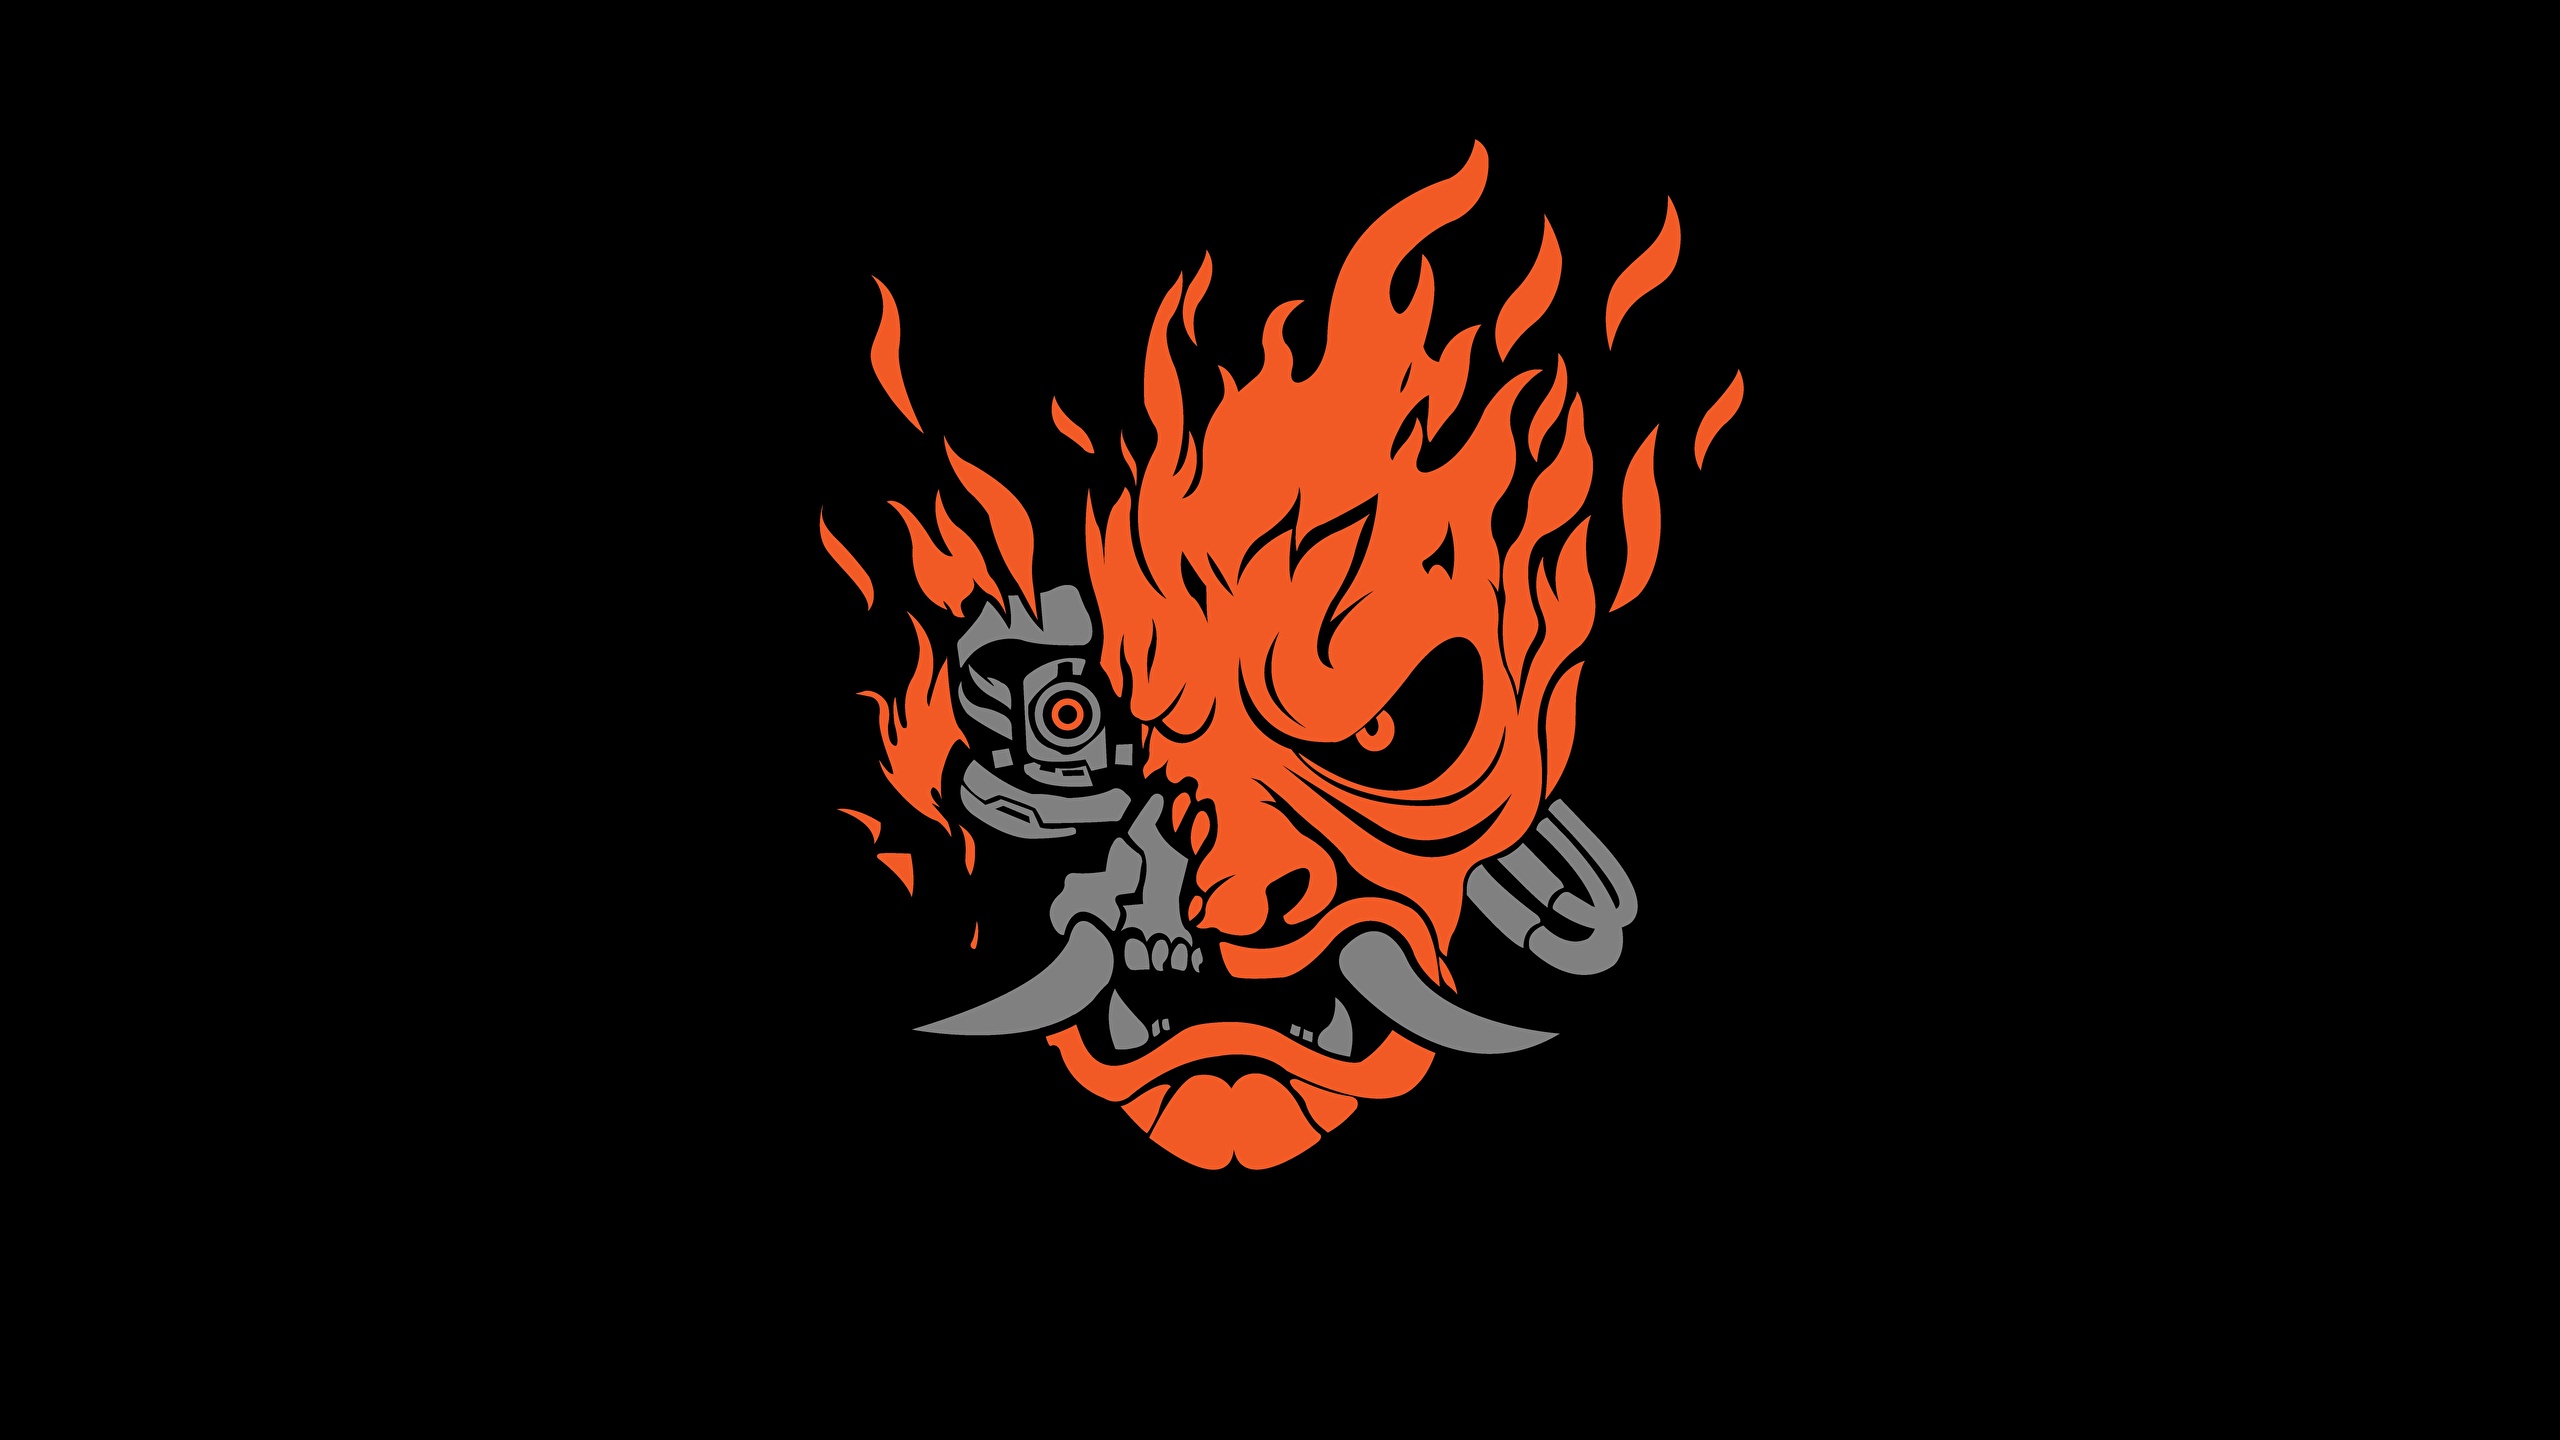 Samurai логотип cyberpunk фото 12